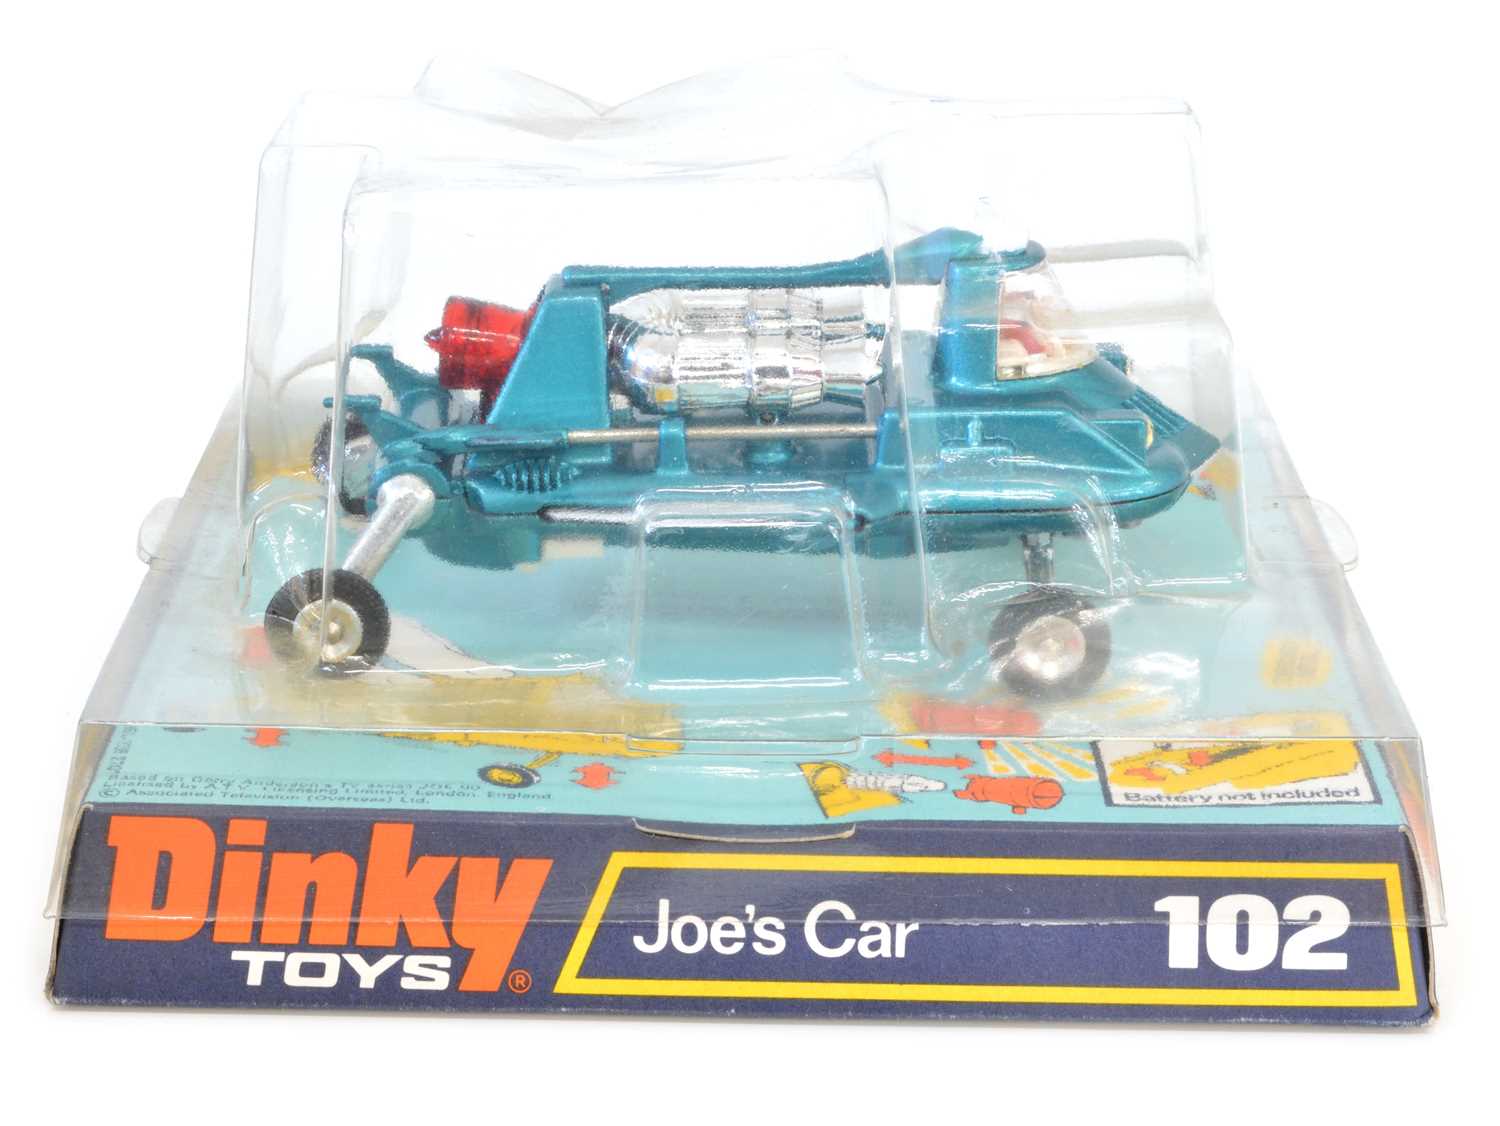 54 - Dinky Toys 102 Joe's Car